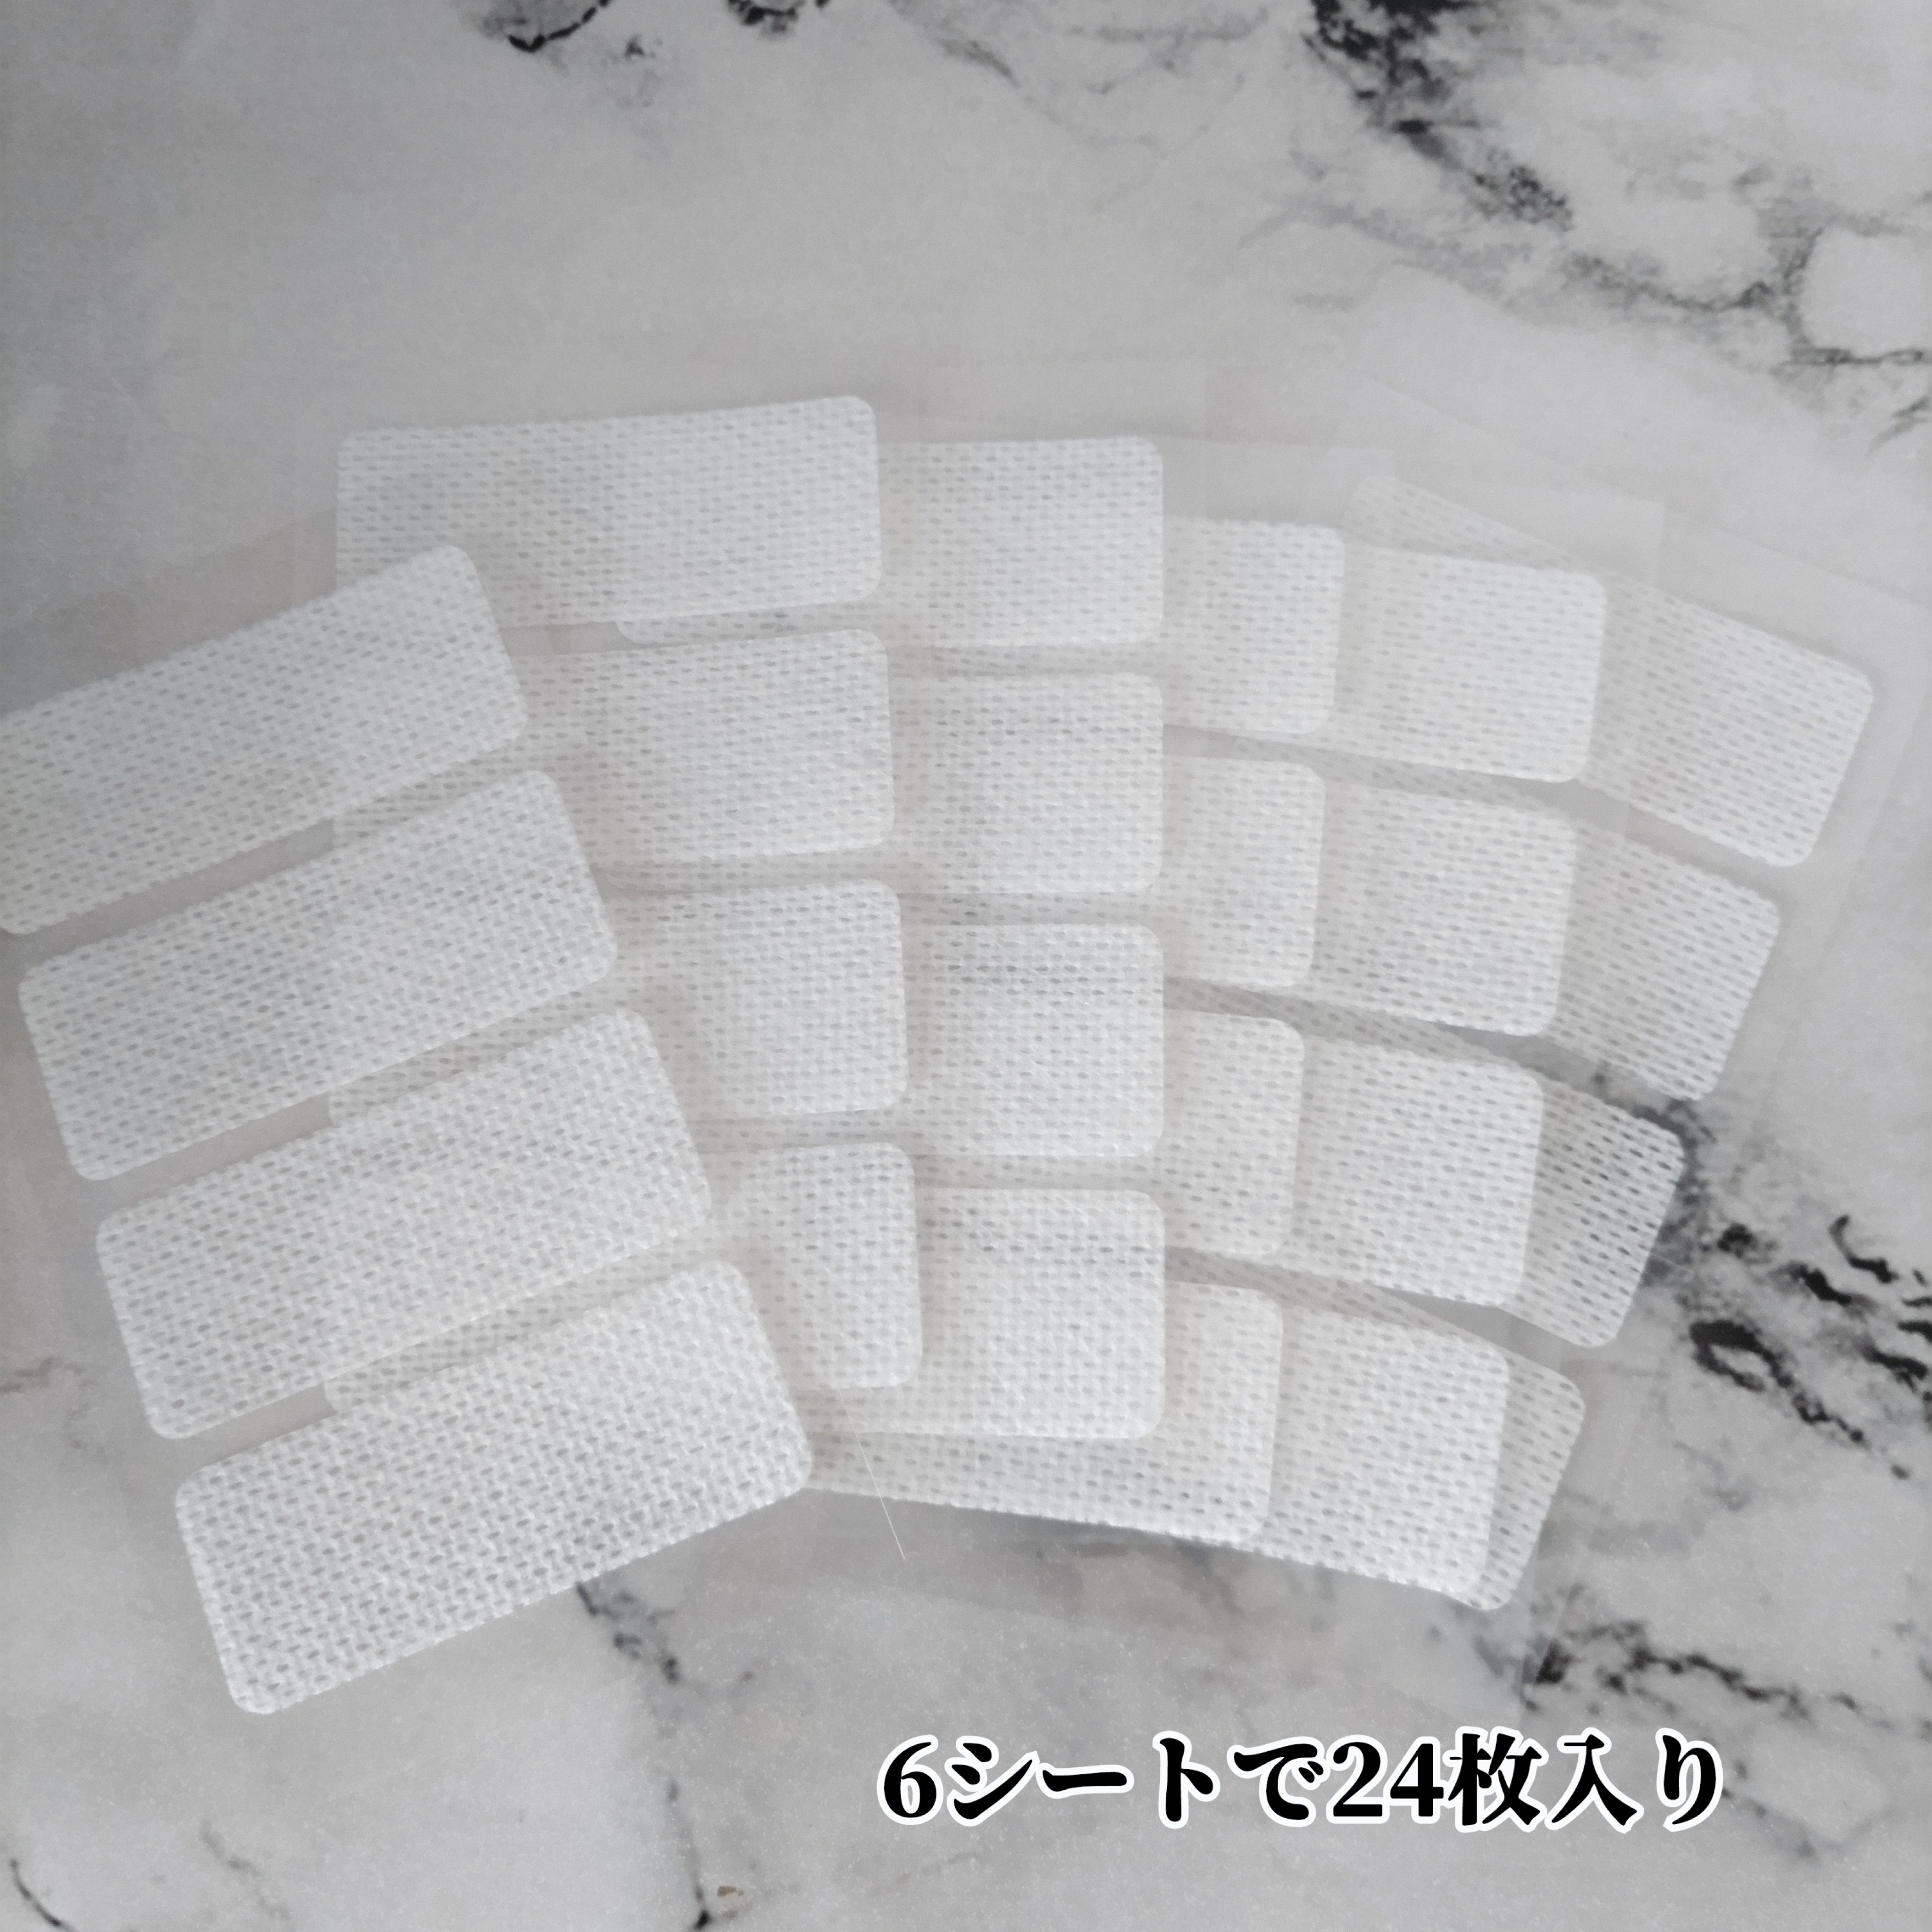 東洋化学株式会社　カバがCOVER! おやすみテープ 24枚入を使ったYuKaRi♡さんのクチコミ画像4